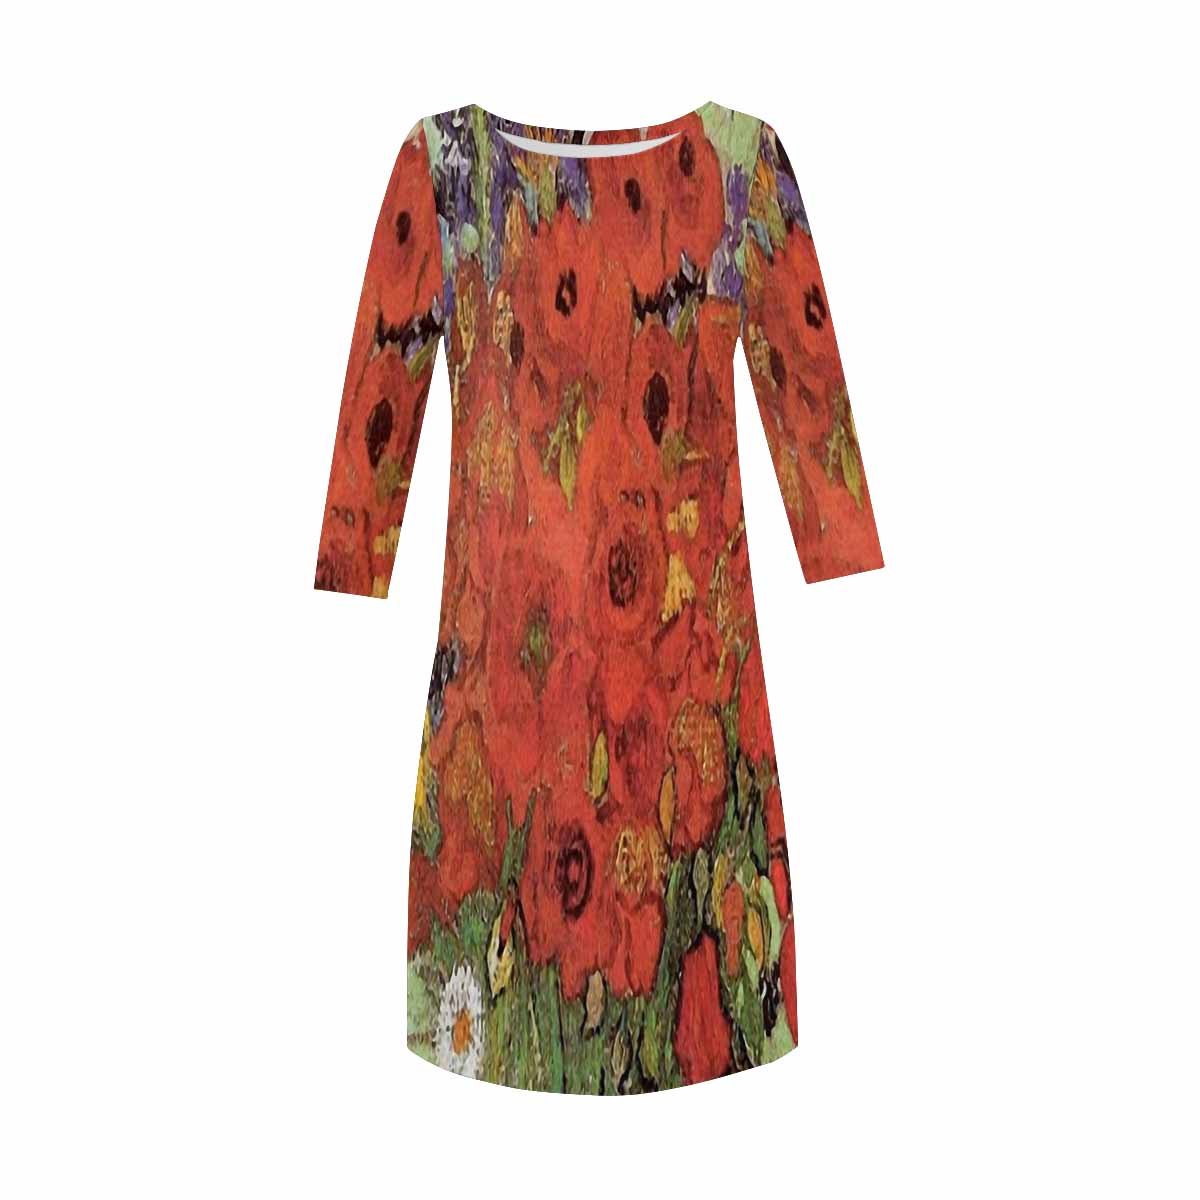 Vintage floral loose dress, model D29532 Design 47